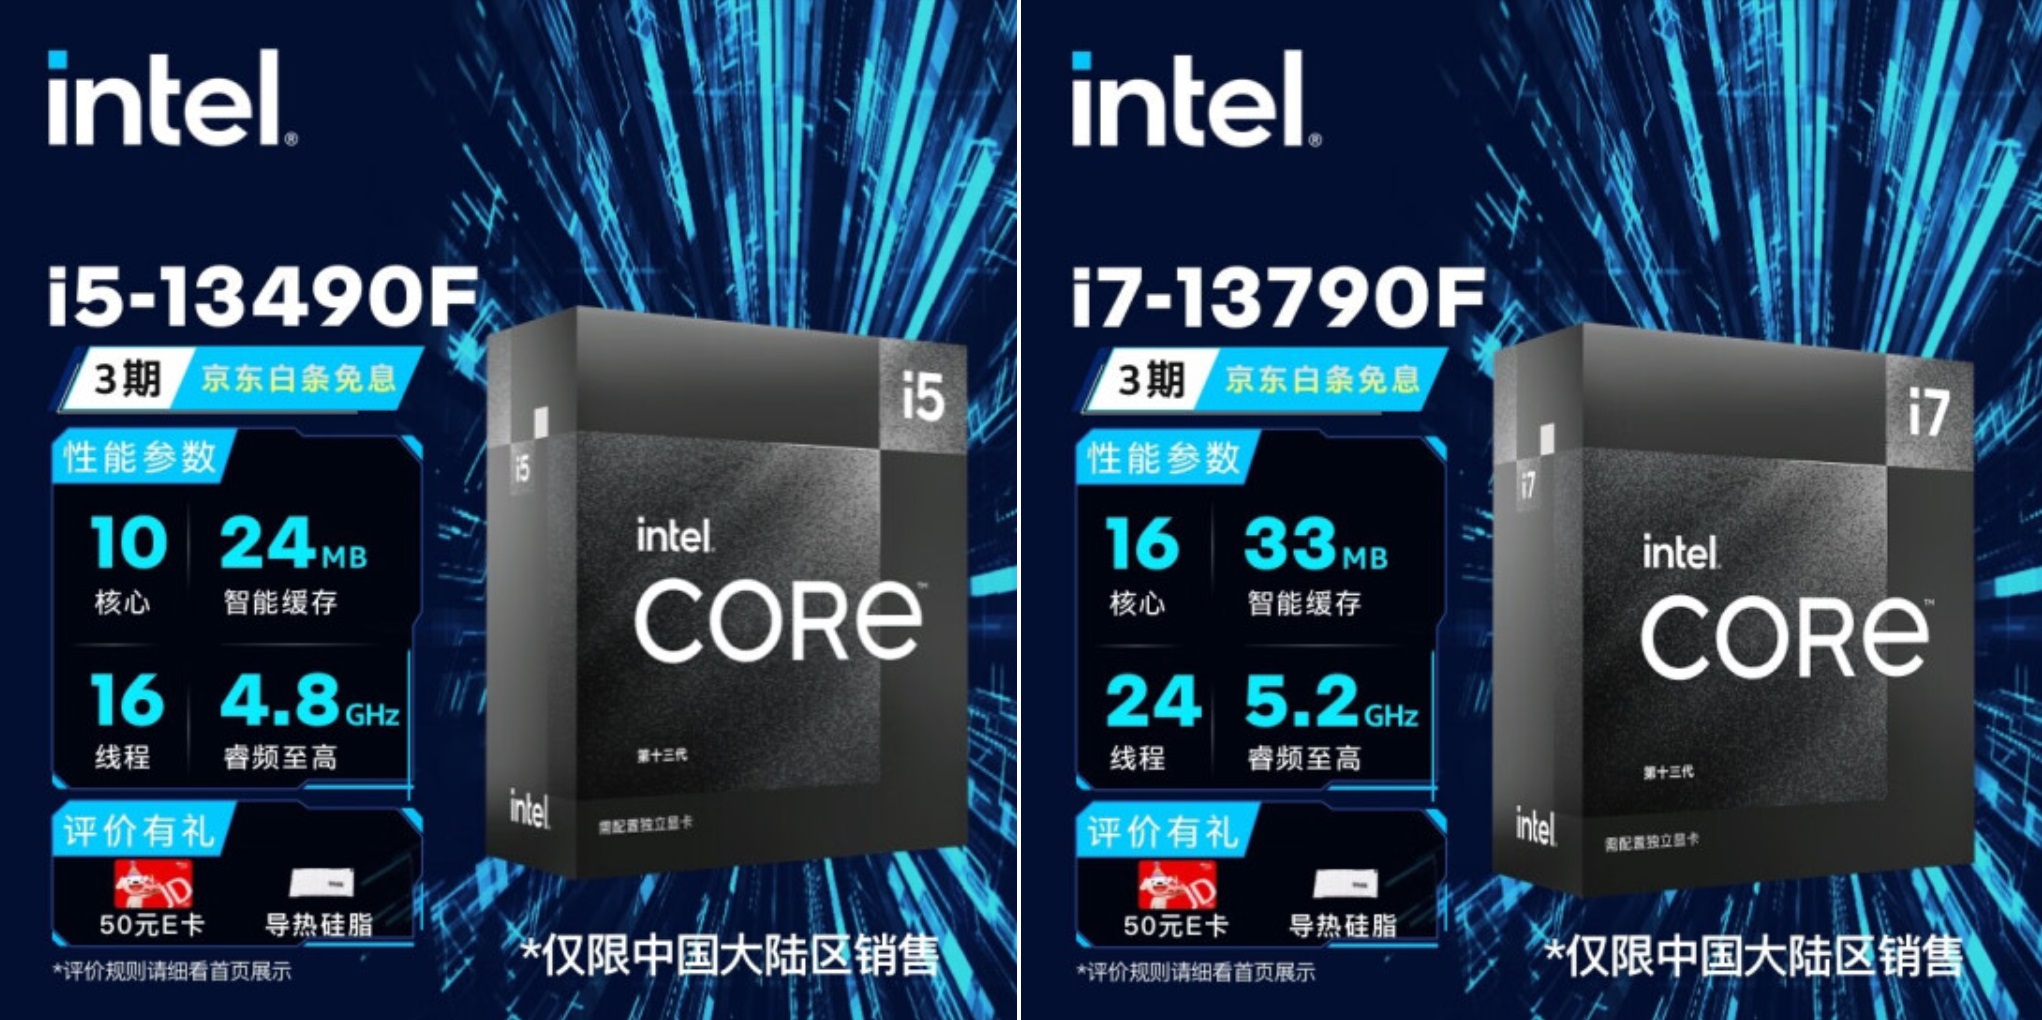 intel-core-i5-13490f-i7-13790f-black-edition-tinhte.jpg